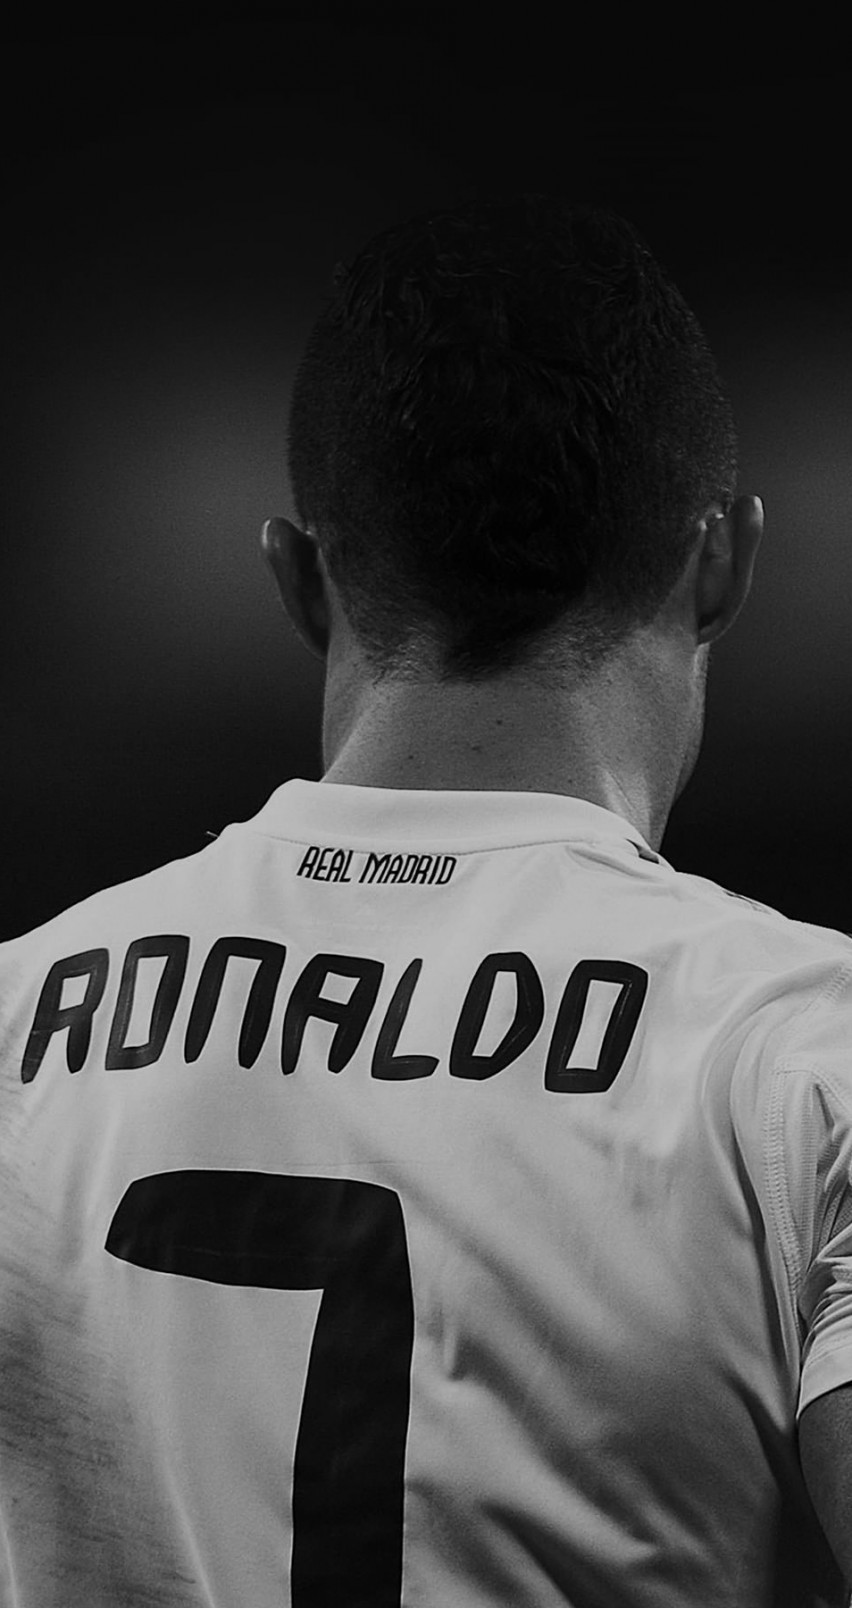 Cristiano Ronaldo in Black & White Wallpaper for Apple iPhone 6 / 6s